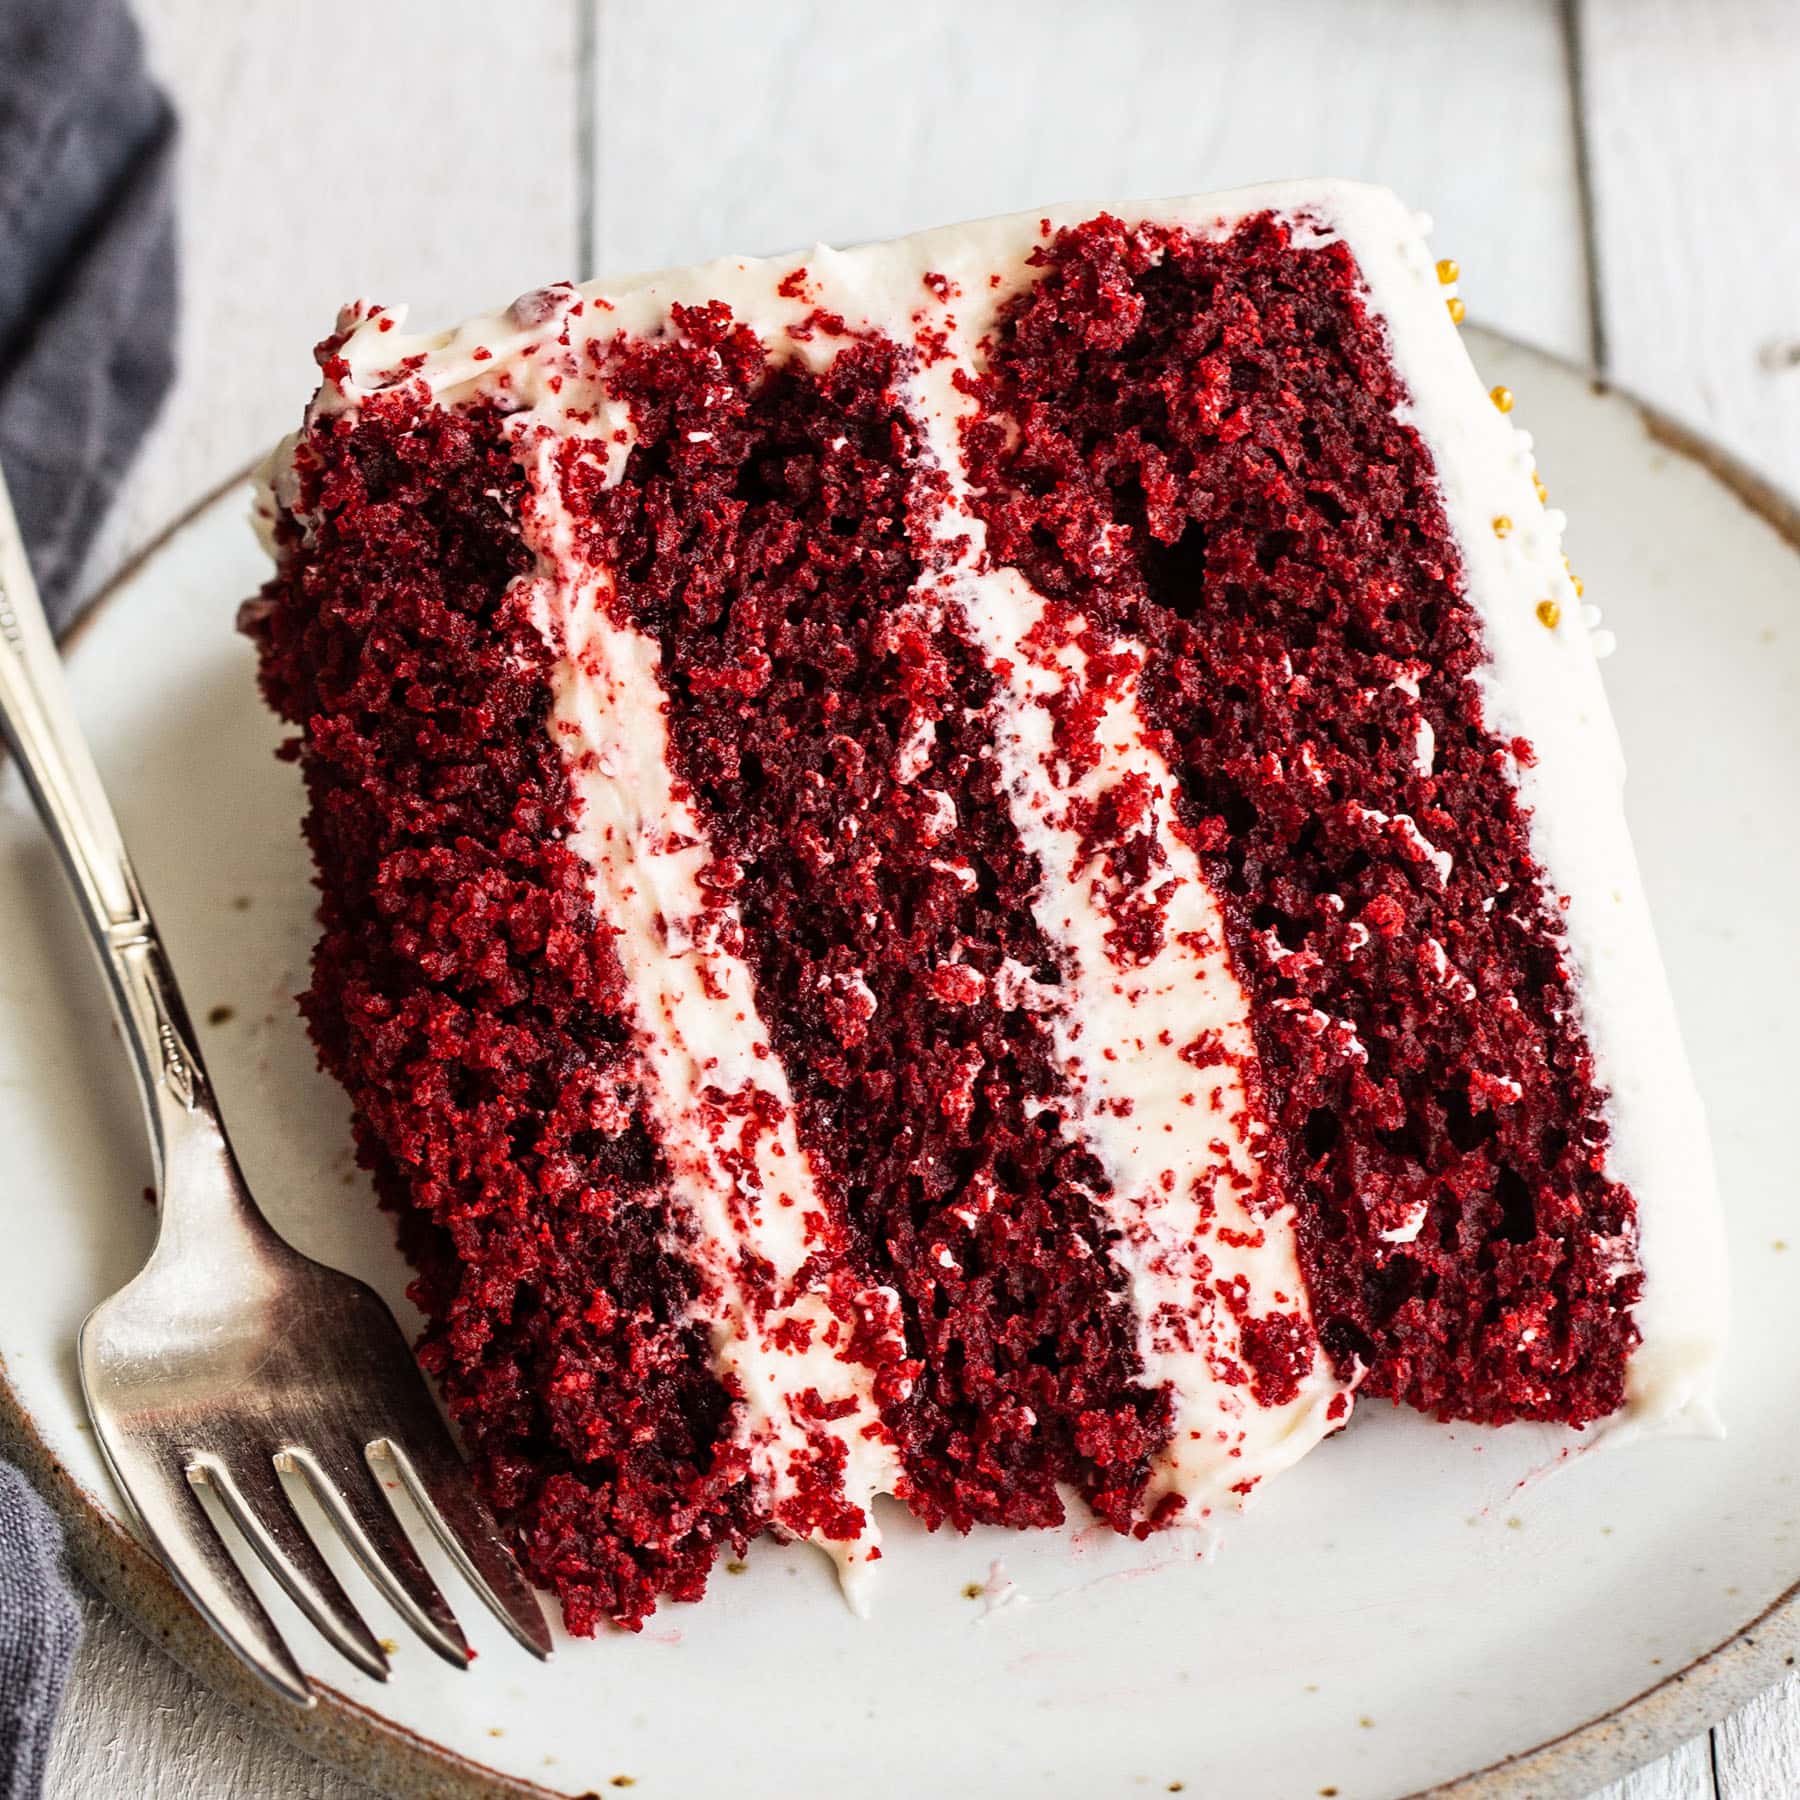 The BEST Red Velvet Cake Recipe - Moist & Fluffy | Handle the Heat